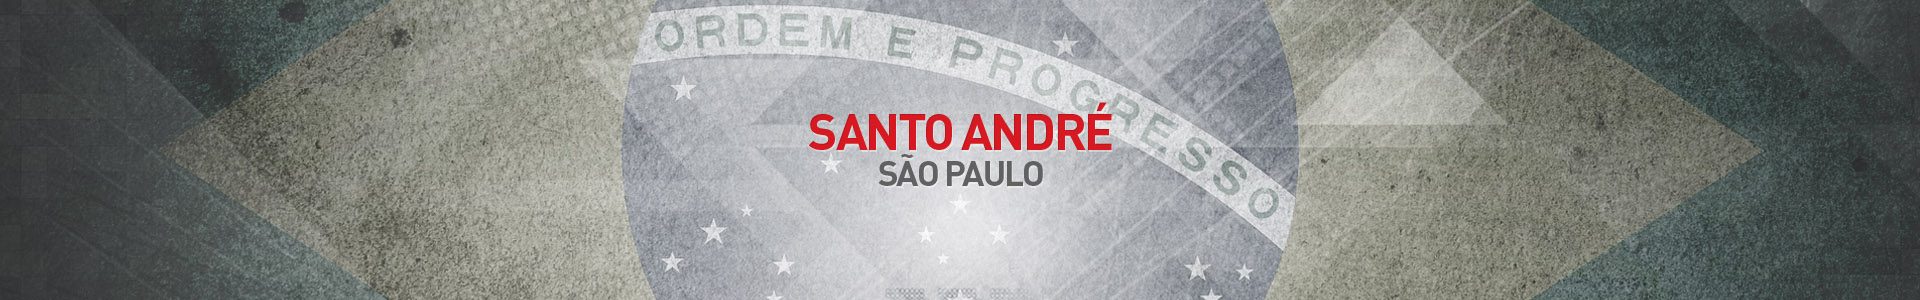 Topo-Cidades-Santo-Andre-SBA